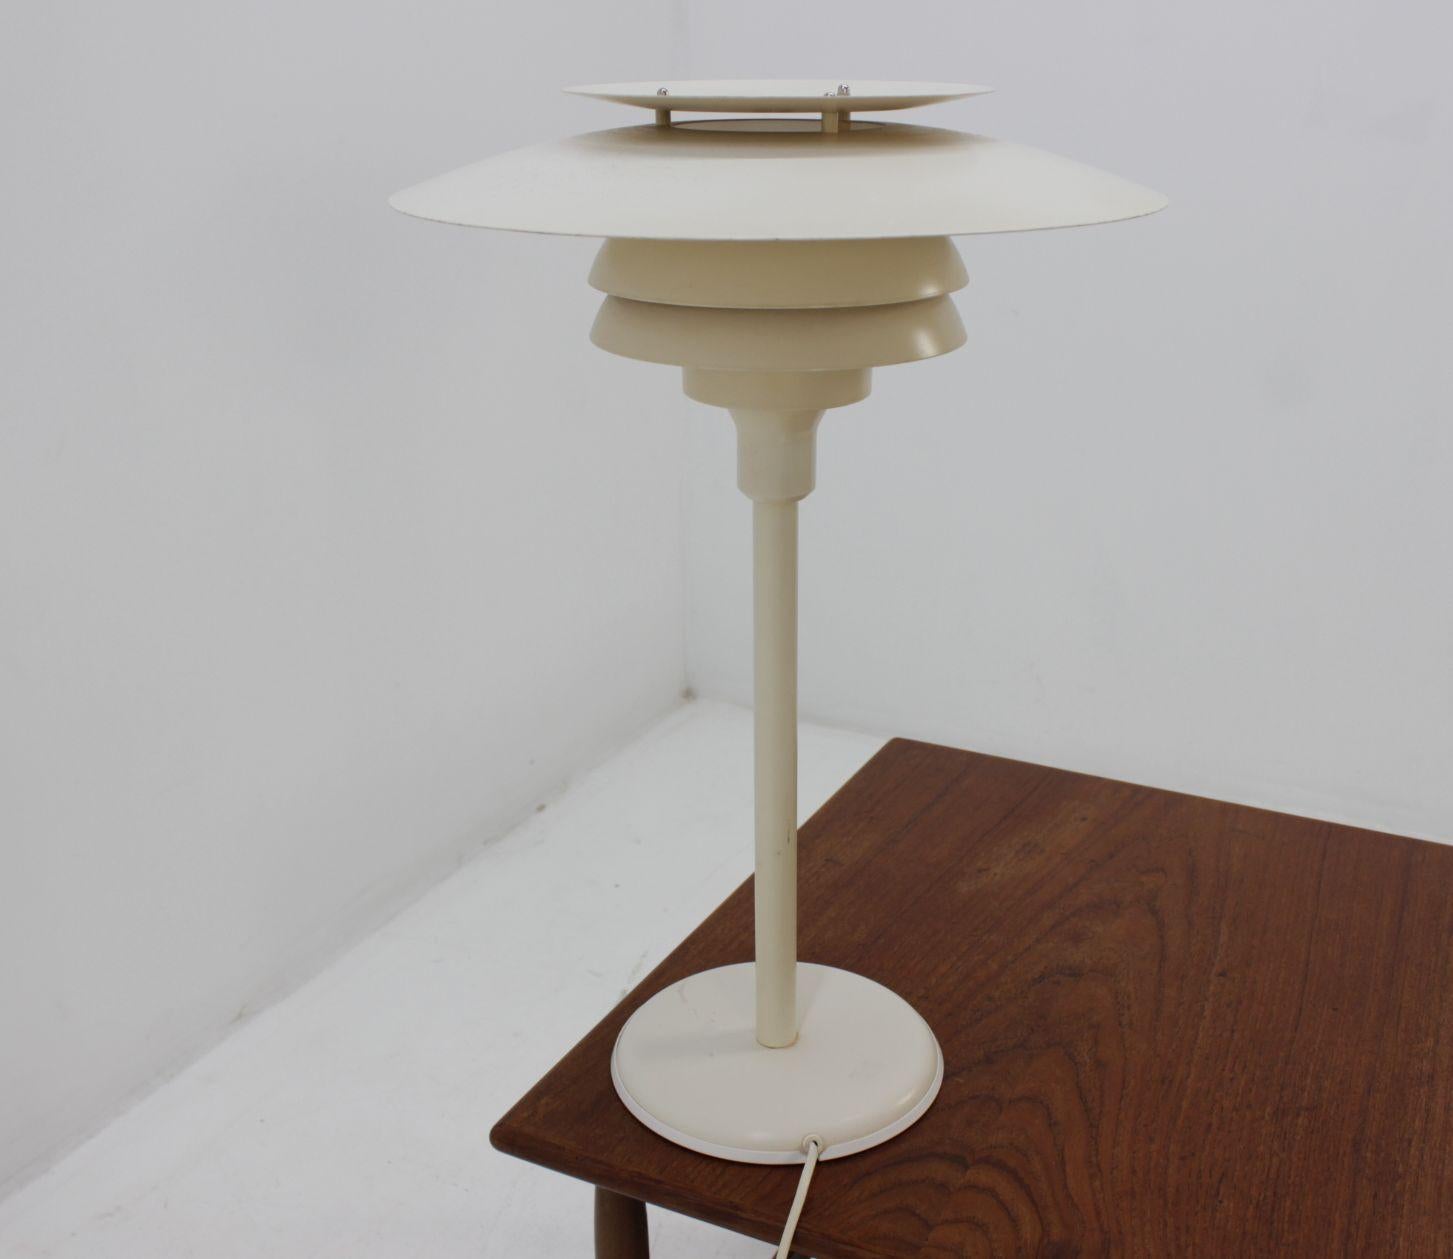 Midcentury desk lamp by Simon Henningsen for Lyskjaer, Denmark, 1970s. Very nice style of lighting.